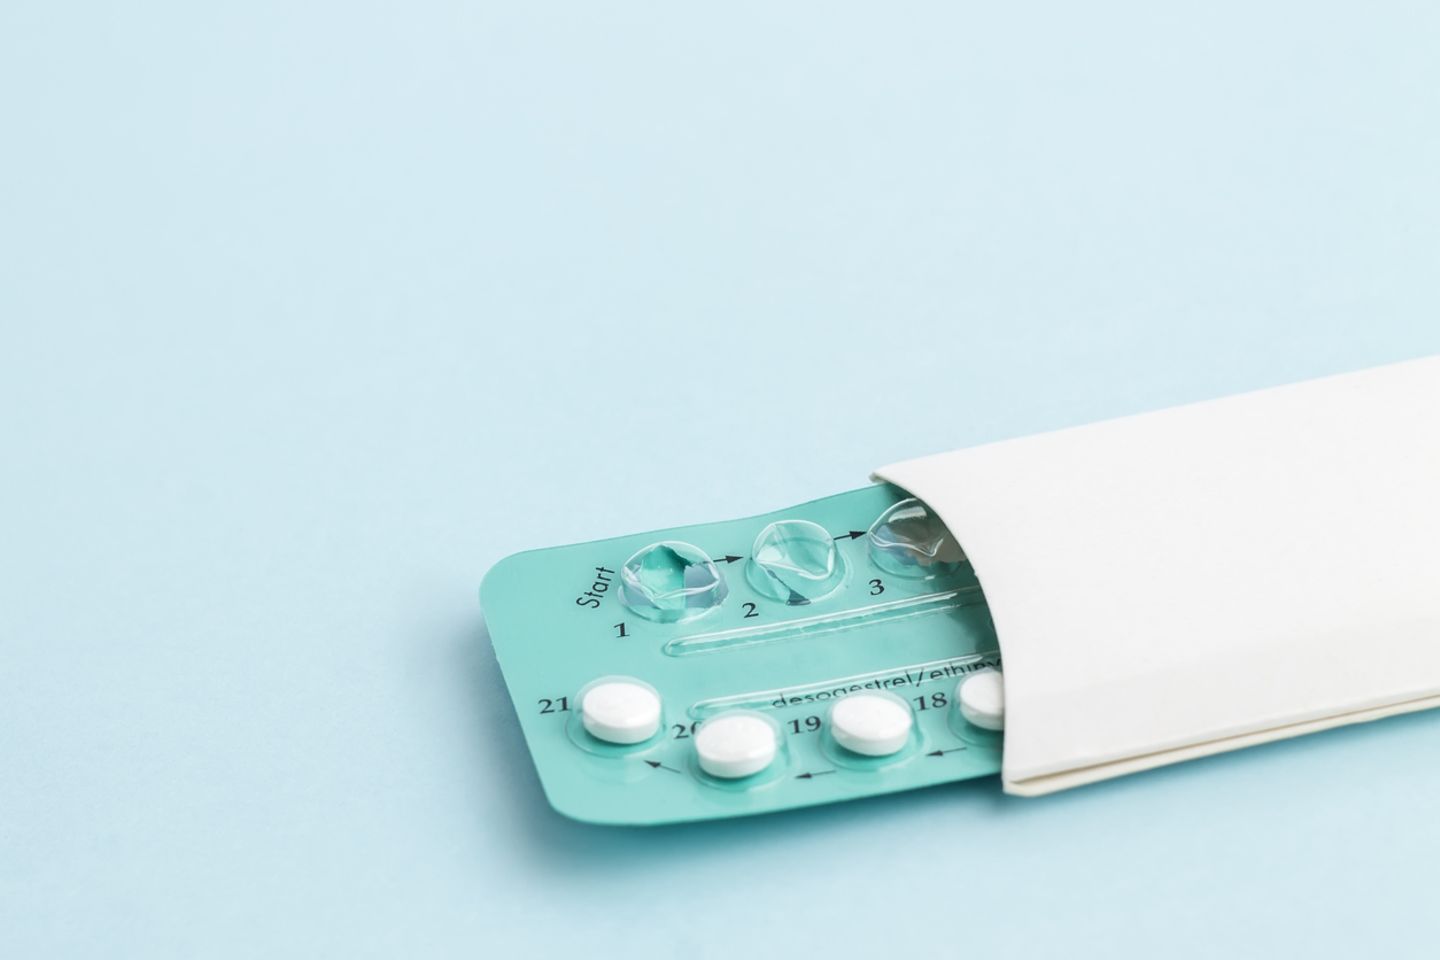 Pille absetzen: Schluss mit hormoneller Verhütung – Gründe und Folgen